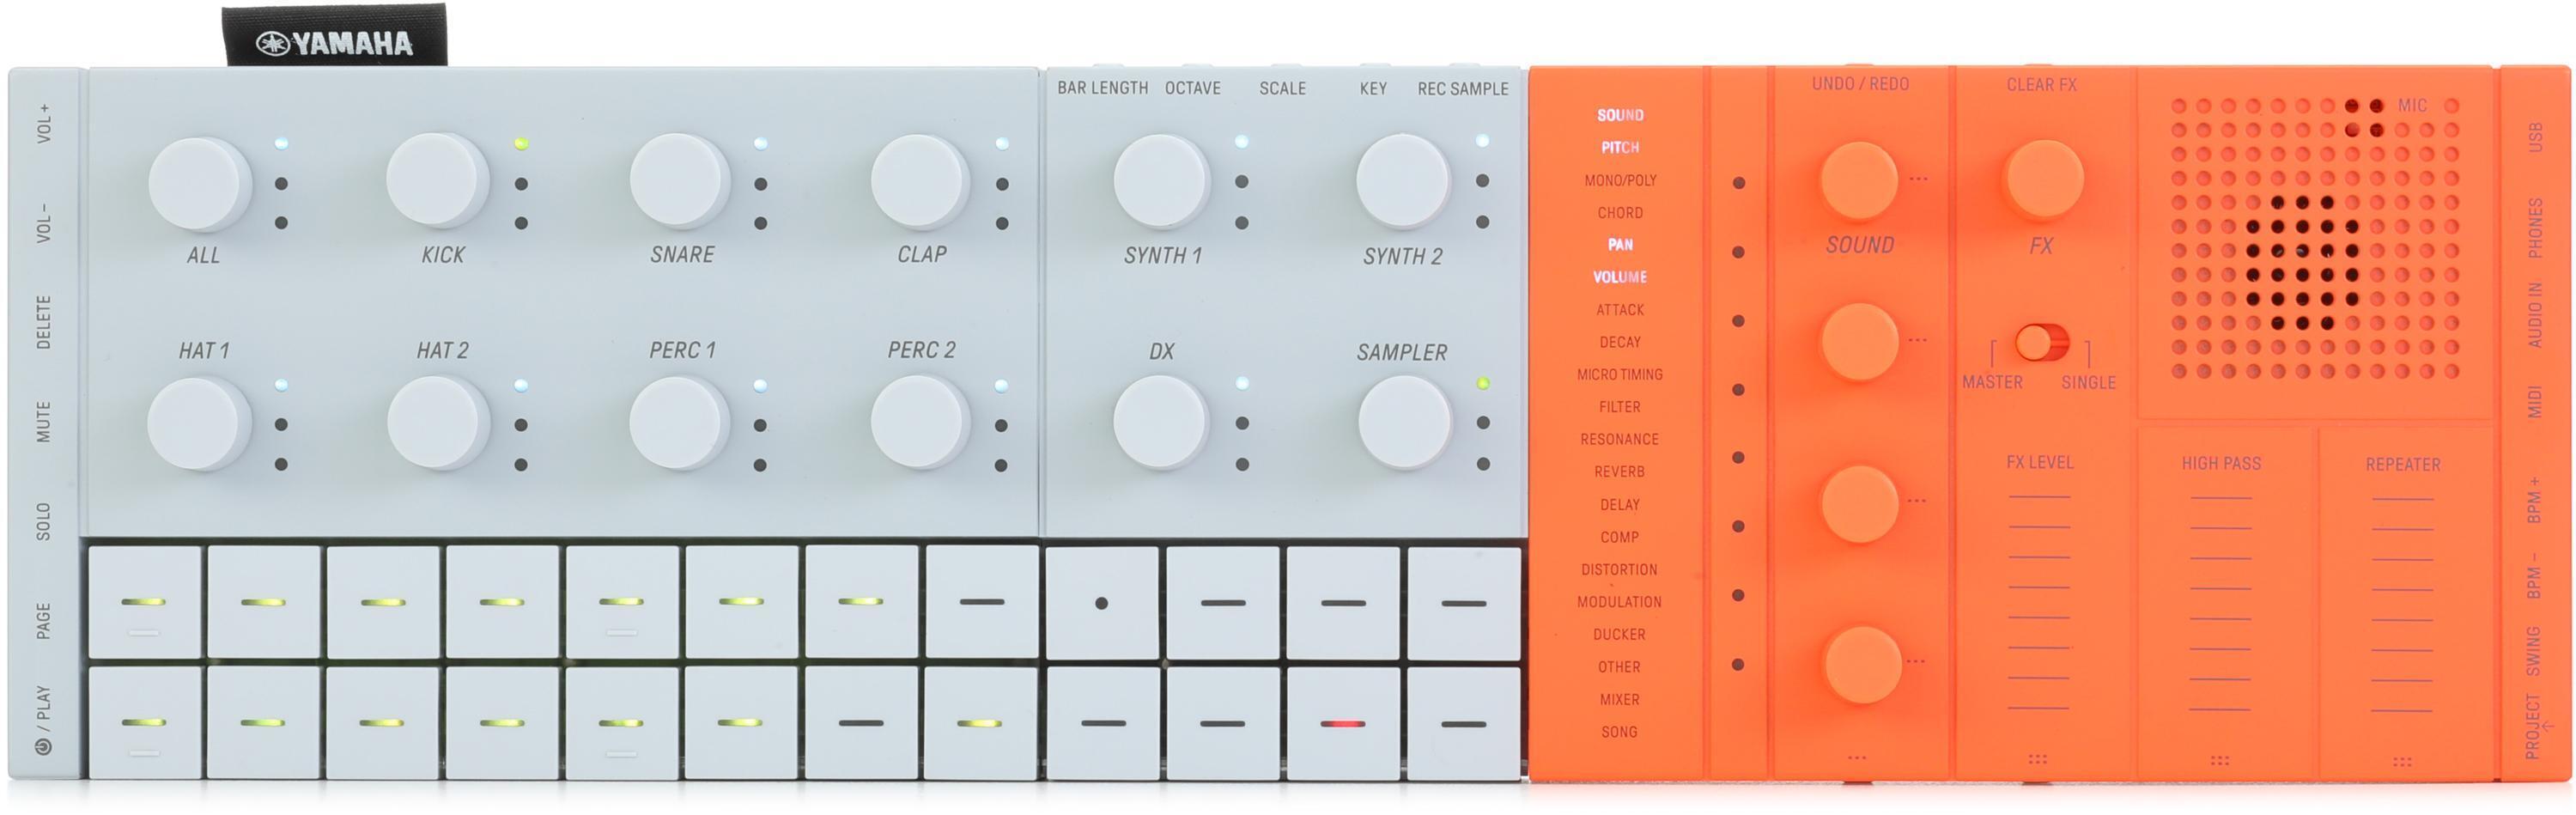 Yamaha Seqtrak Mobile Music Ideastation with Keyboard - Orange 